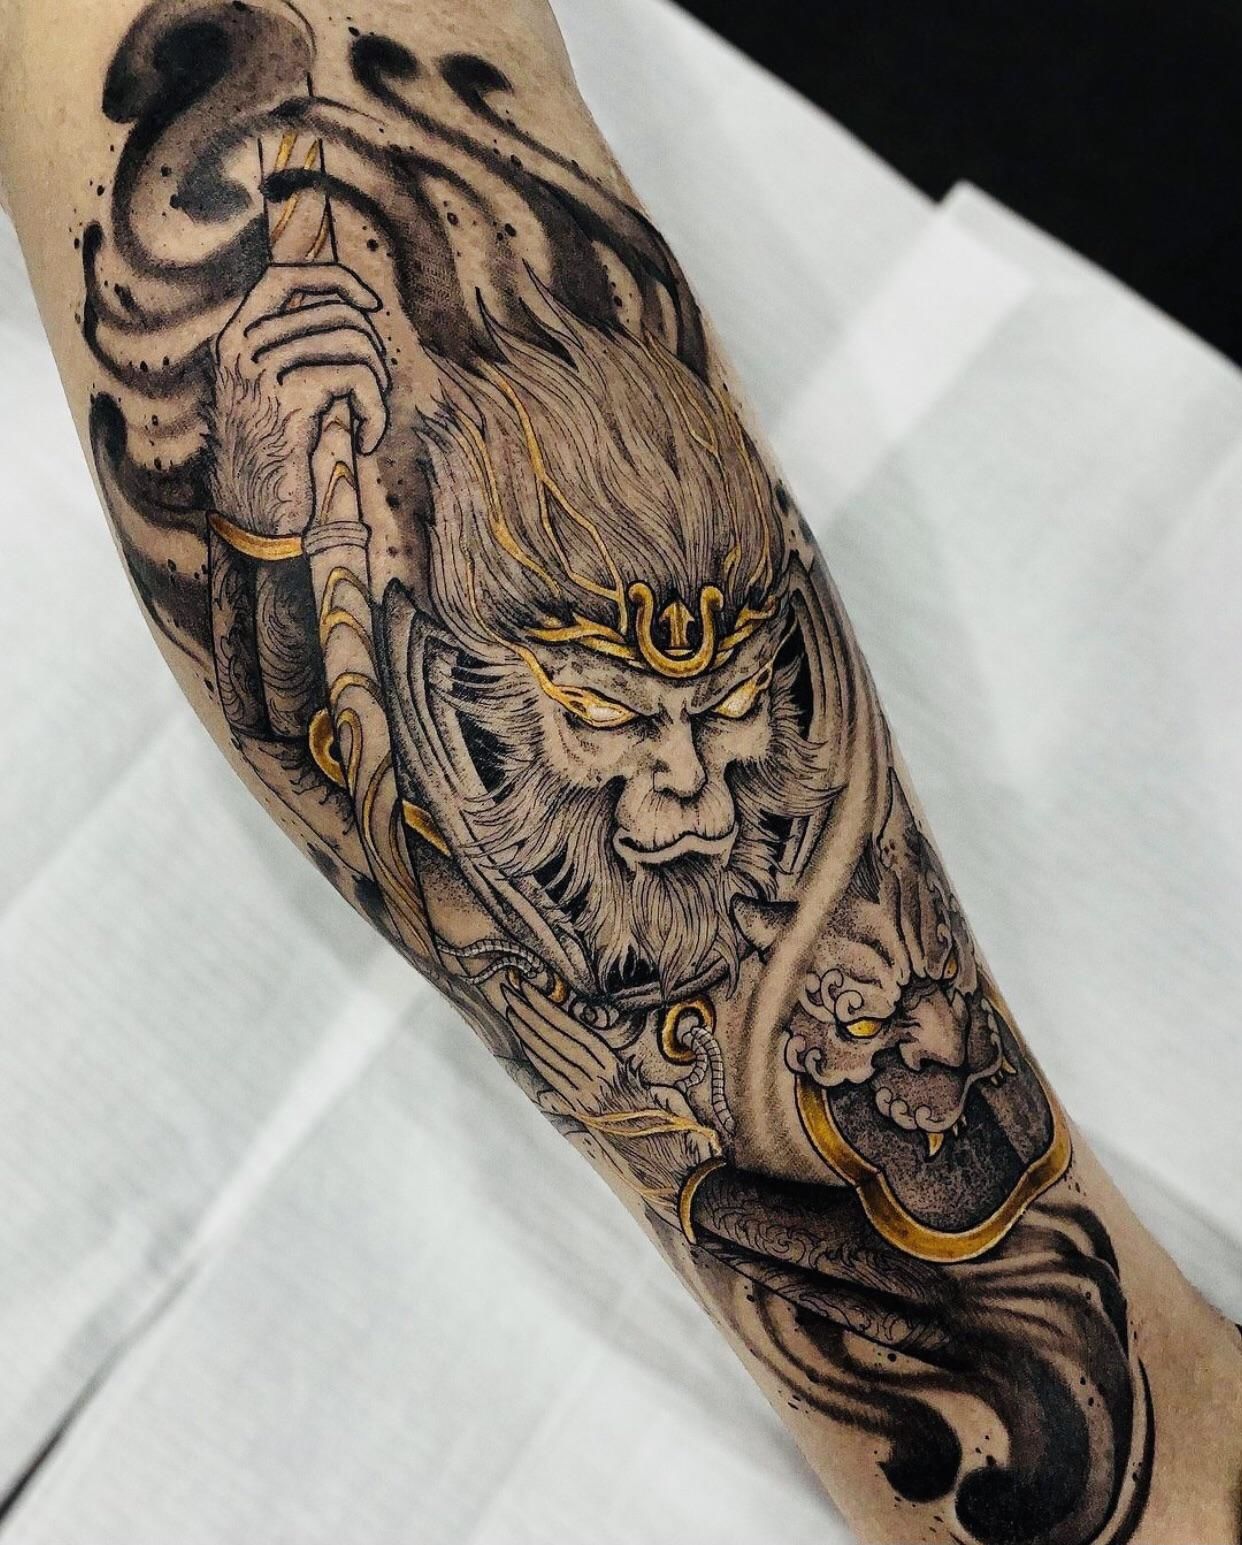 Поклонник Dota 2 набил татуировку с изображением Monkey King